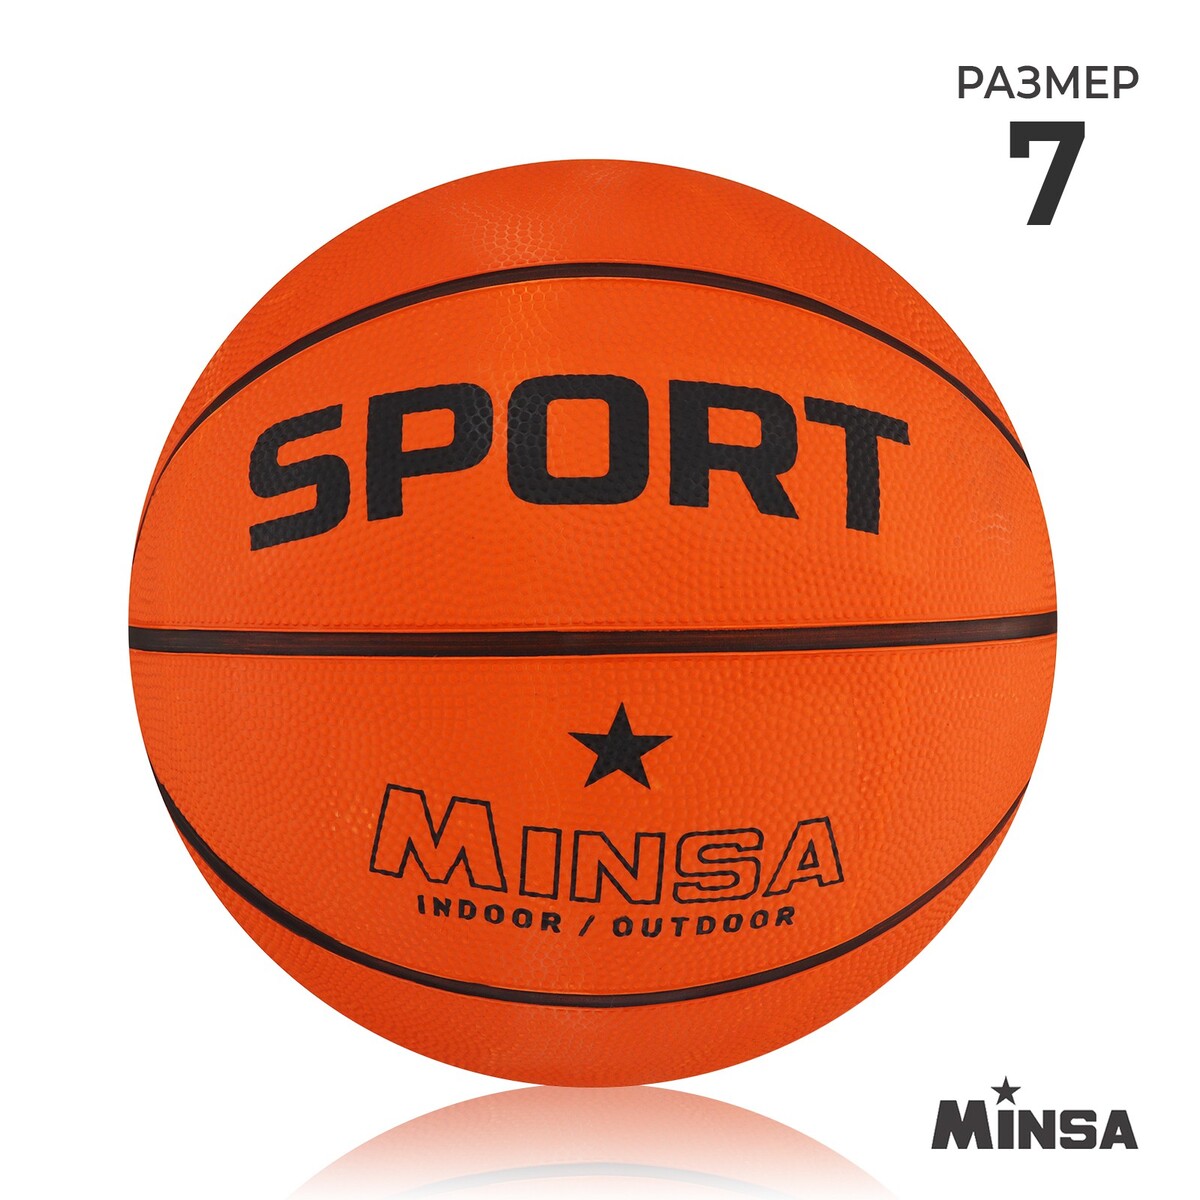 Мяч баскетбольный minsa sport, пвх, клееный, 8 панелей, р. 7 мяч баскетбольный minsa sport пвх клееный 8 панелей р 7